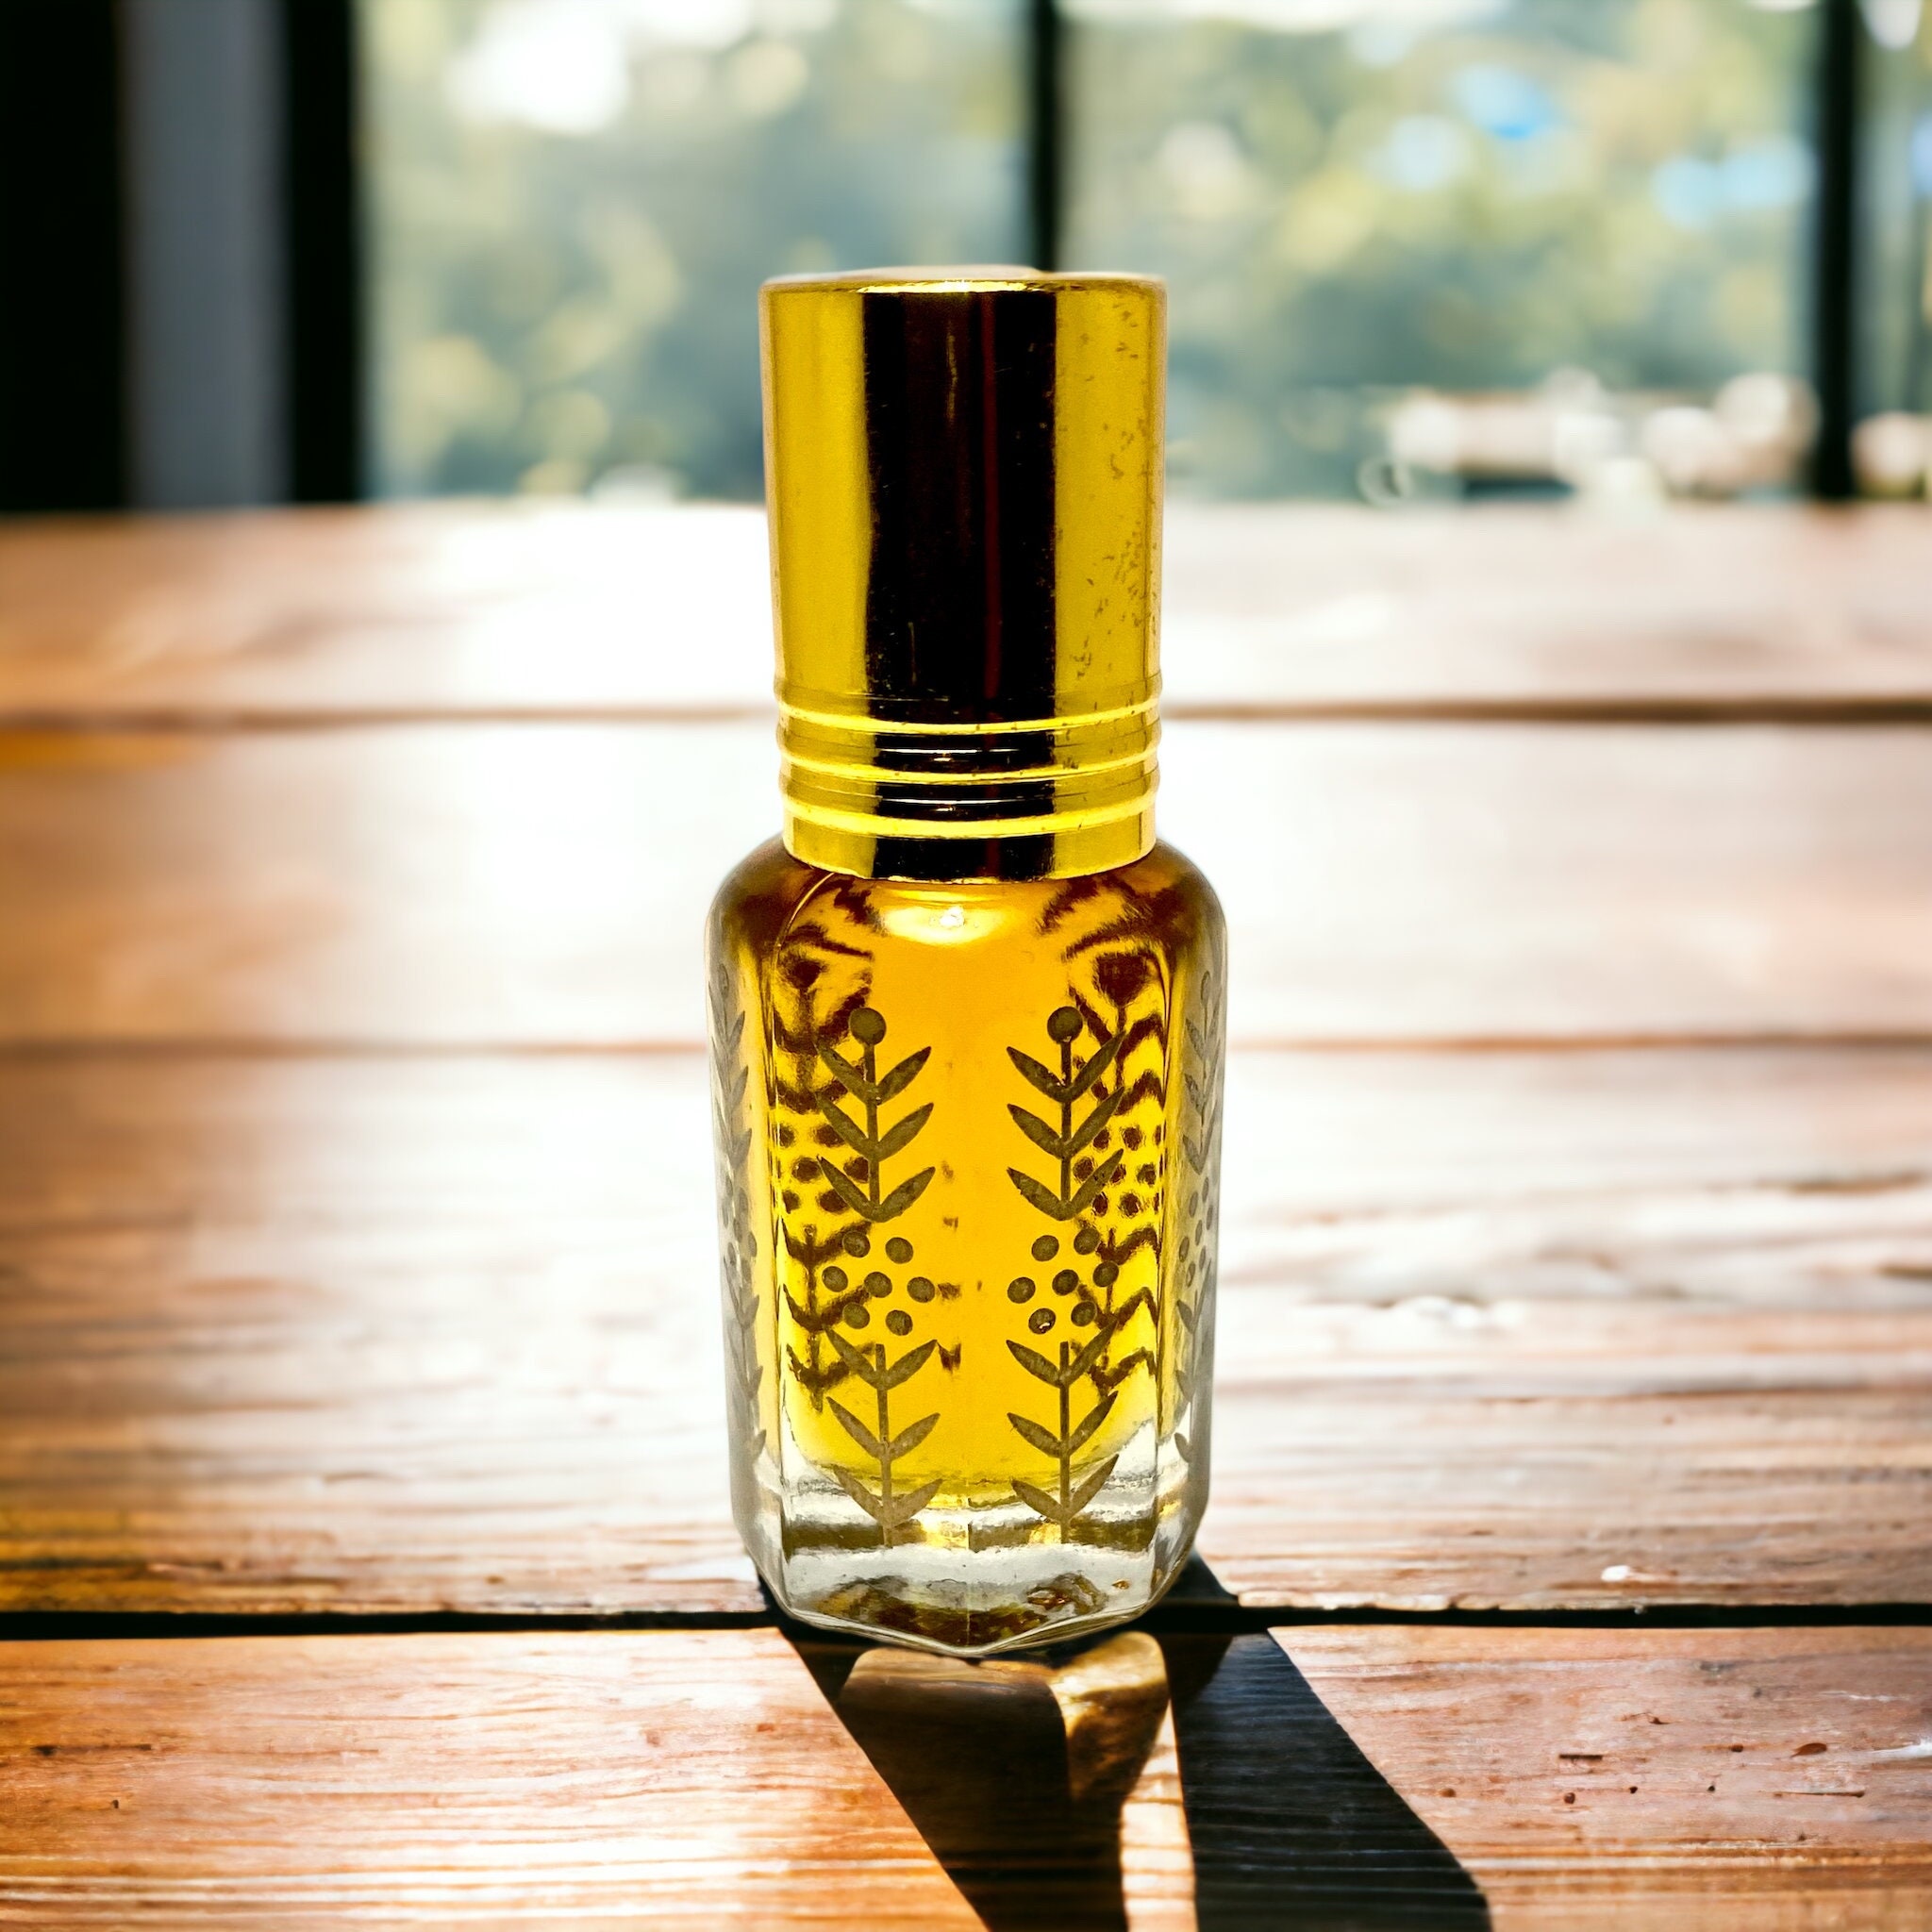 Vanilla Musk Import [Type*] : Oil - The Fragrance Bar Noir